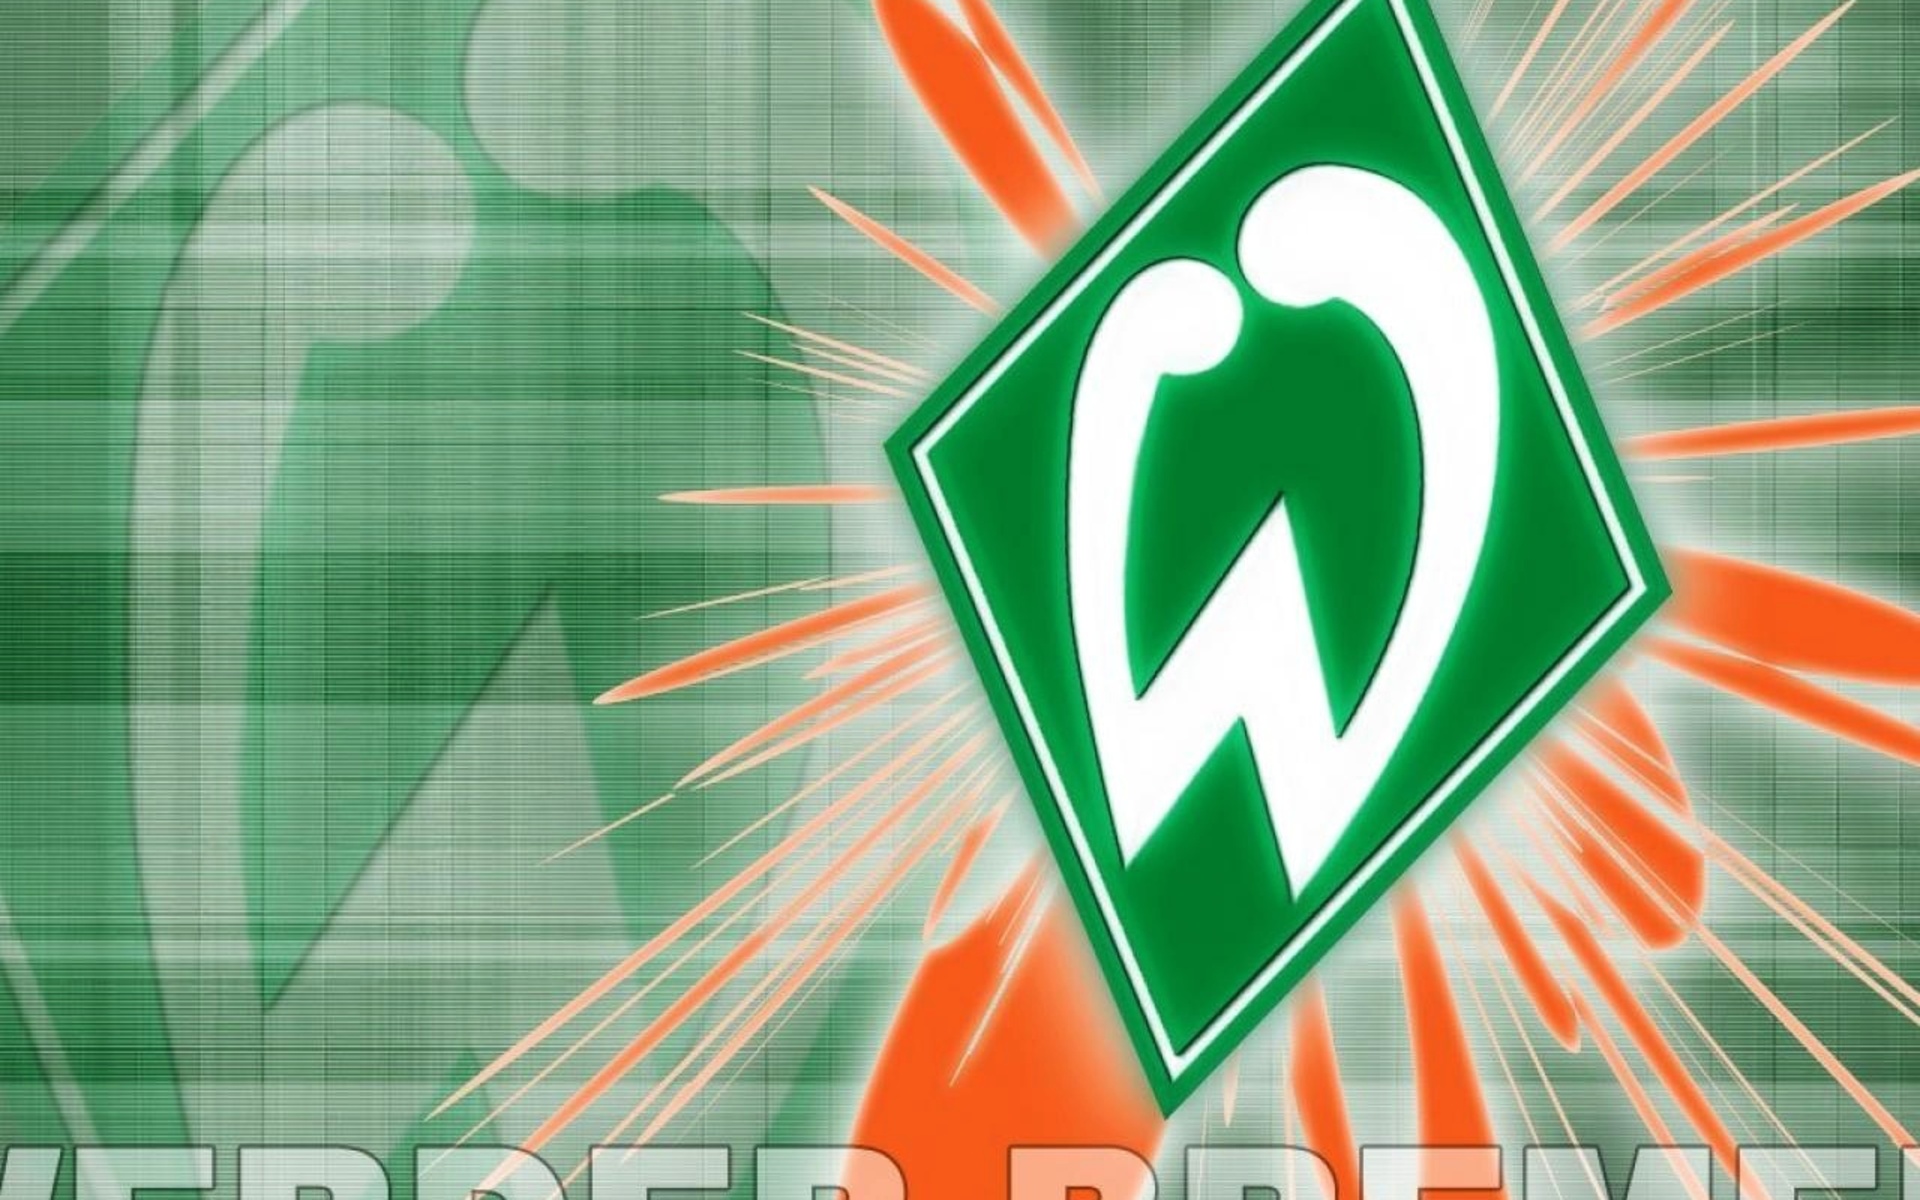 Hình nền Werder Bremen (1) - hình nền bóng đá - hình nền cầu thủ - hình nền đội bóng